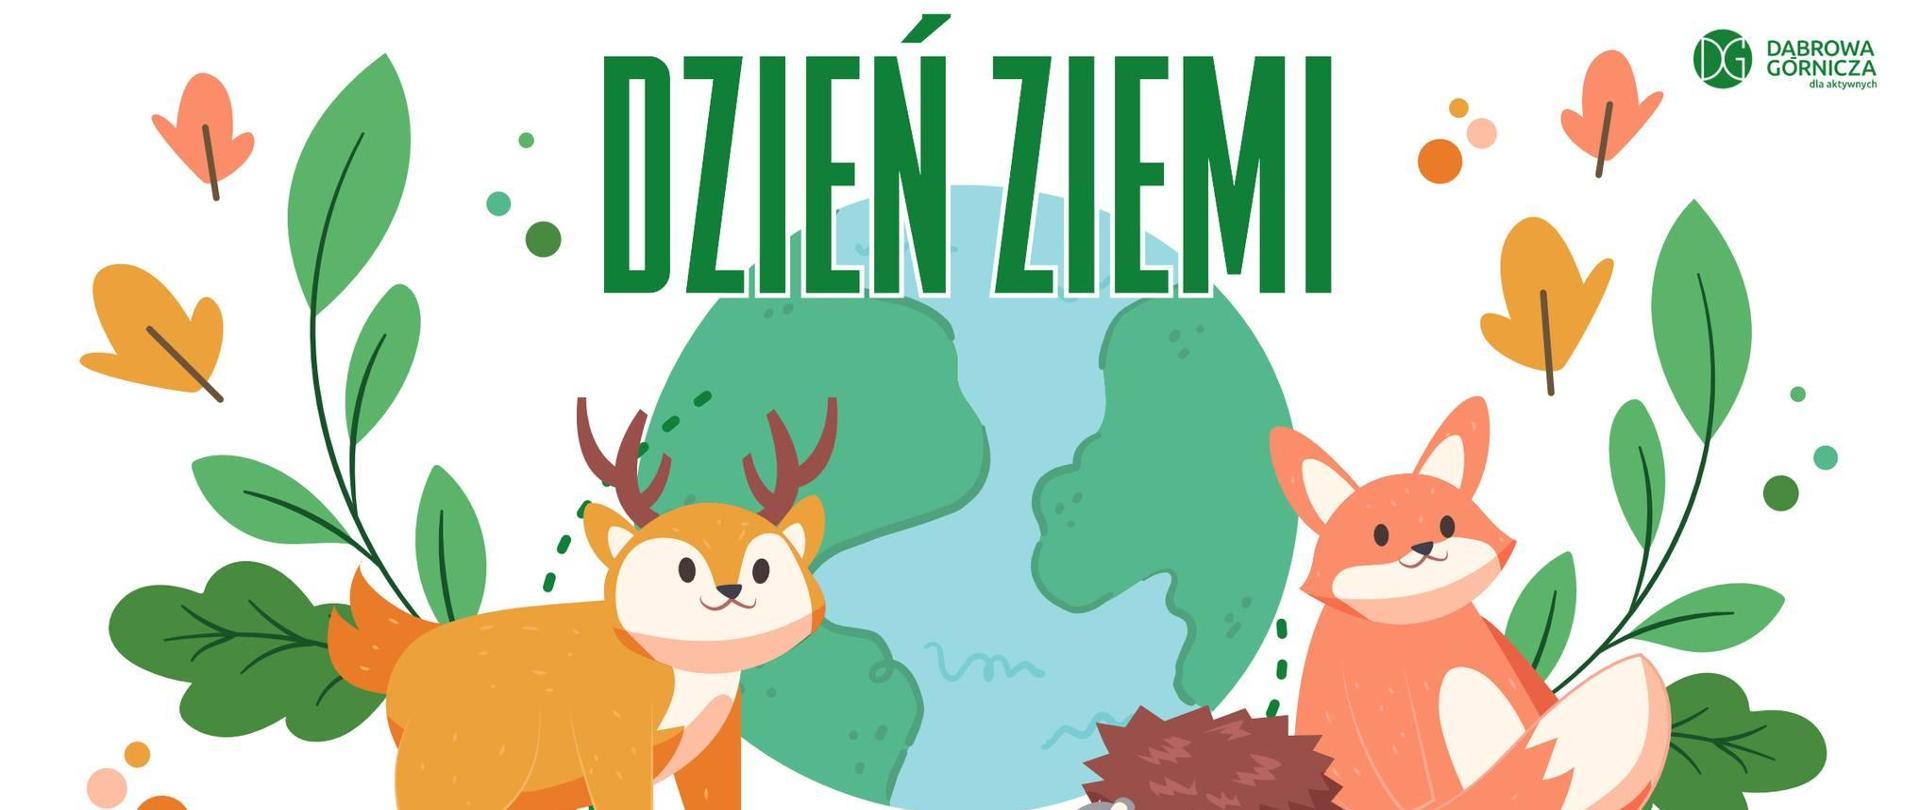 grafika promująca wydarzenie z okazji dnia ziemi w mieście Dąbrowa Górnicza